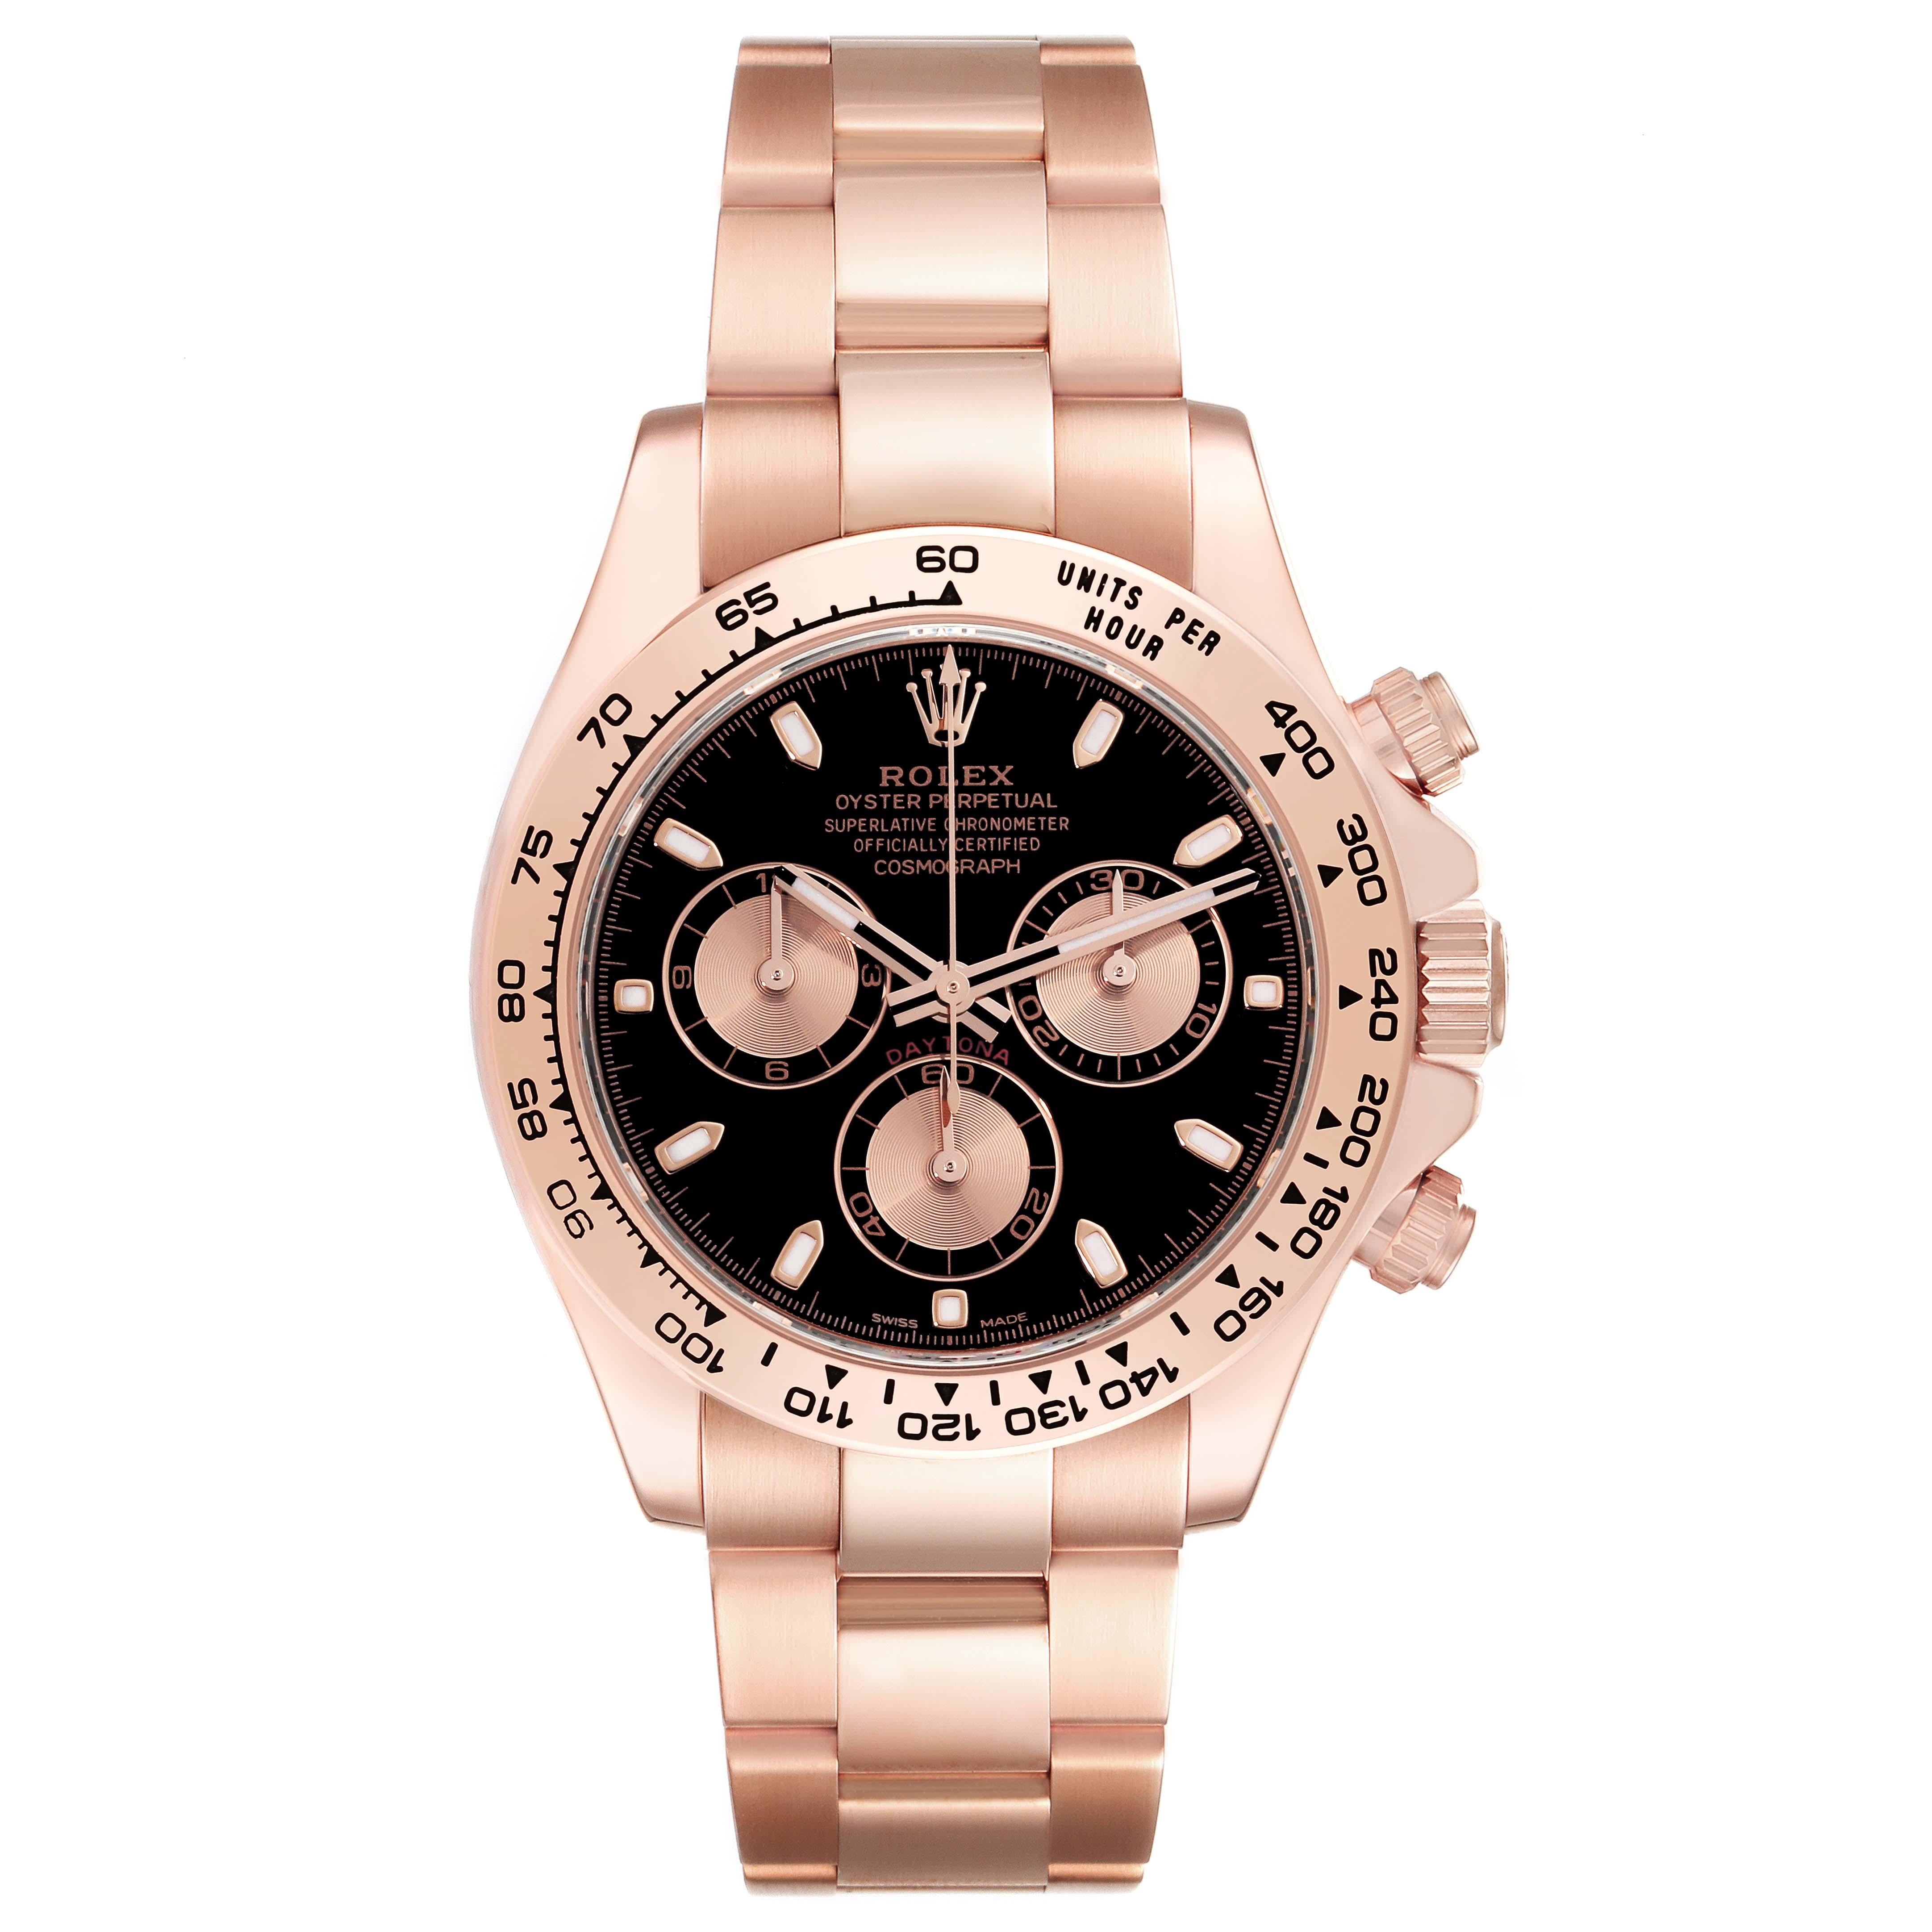 Rolex Daytona Black Dial Rose Gold Mens Watch 116505 Box Card. Mouvement à remontage automatique certifié chronomètre. Boîtier en or everose 18 carats de 40,0 mm de diamètre. Boutons poussoirs spéciaux à visser. Fond vissé. Poussoirs et couronne du